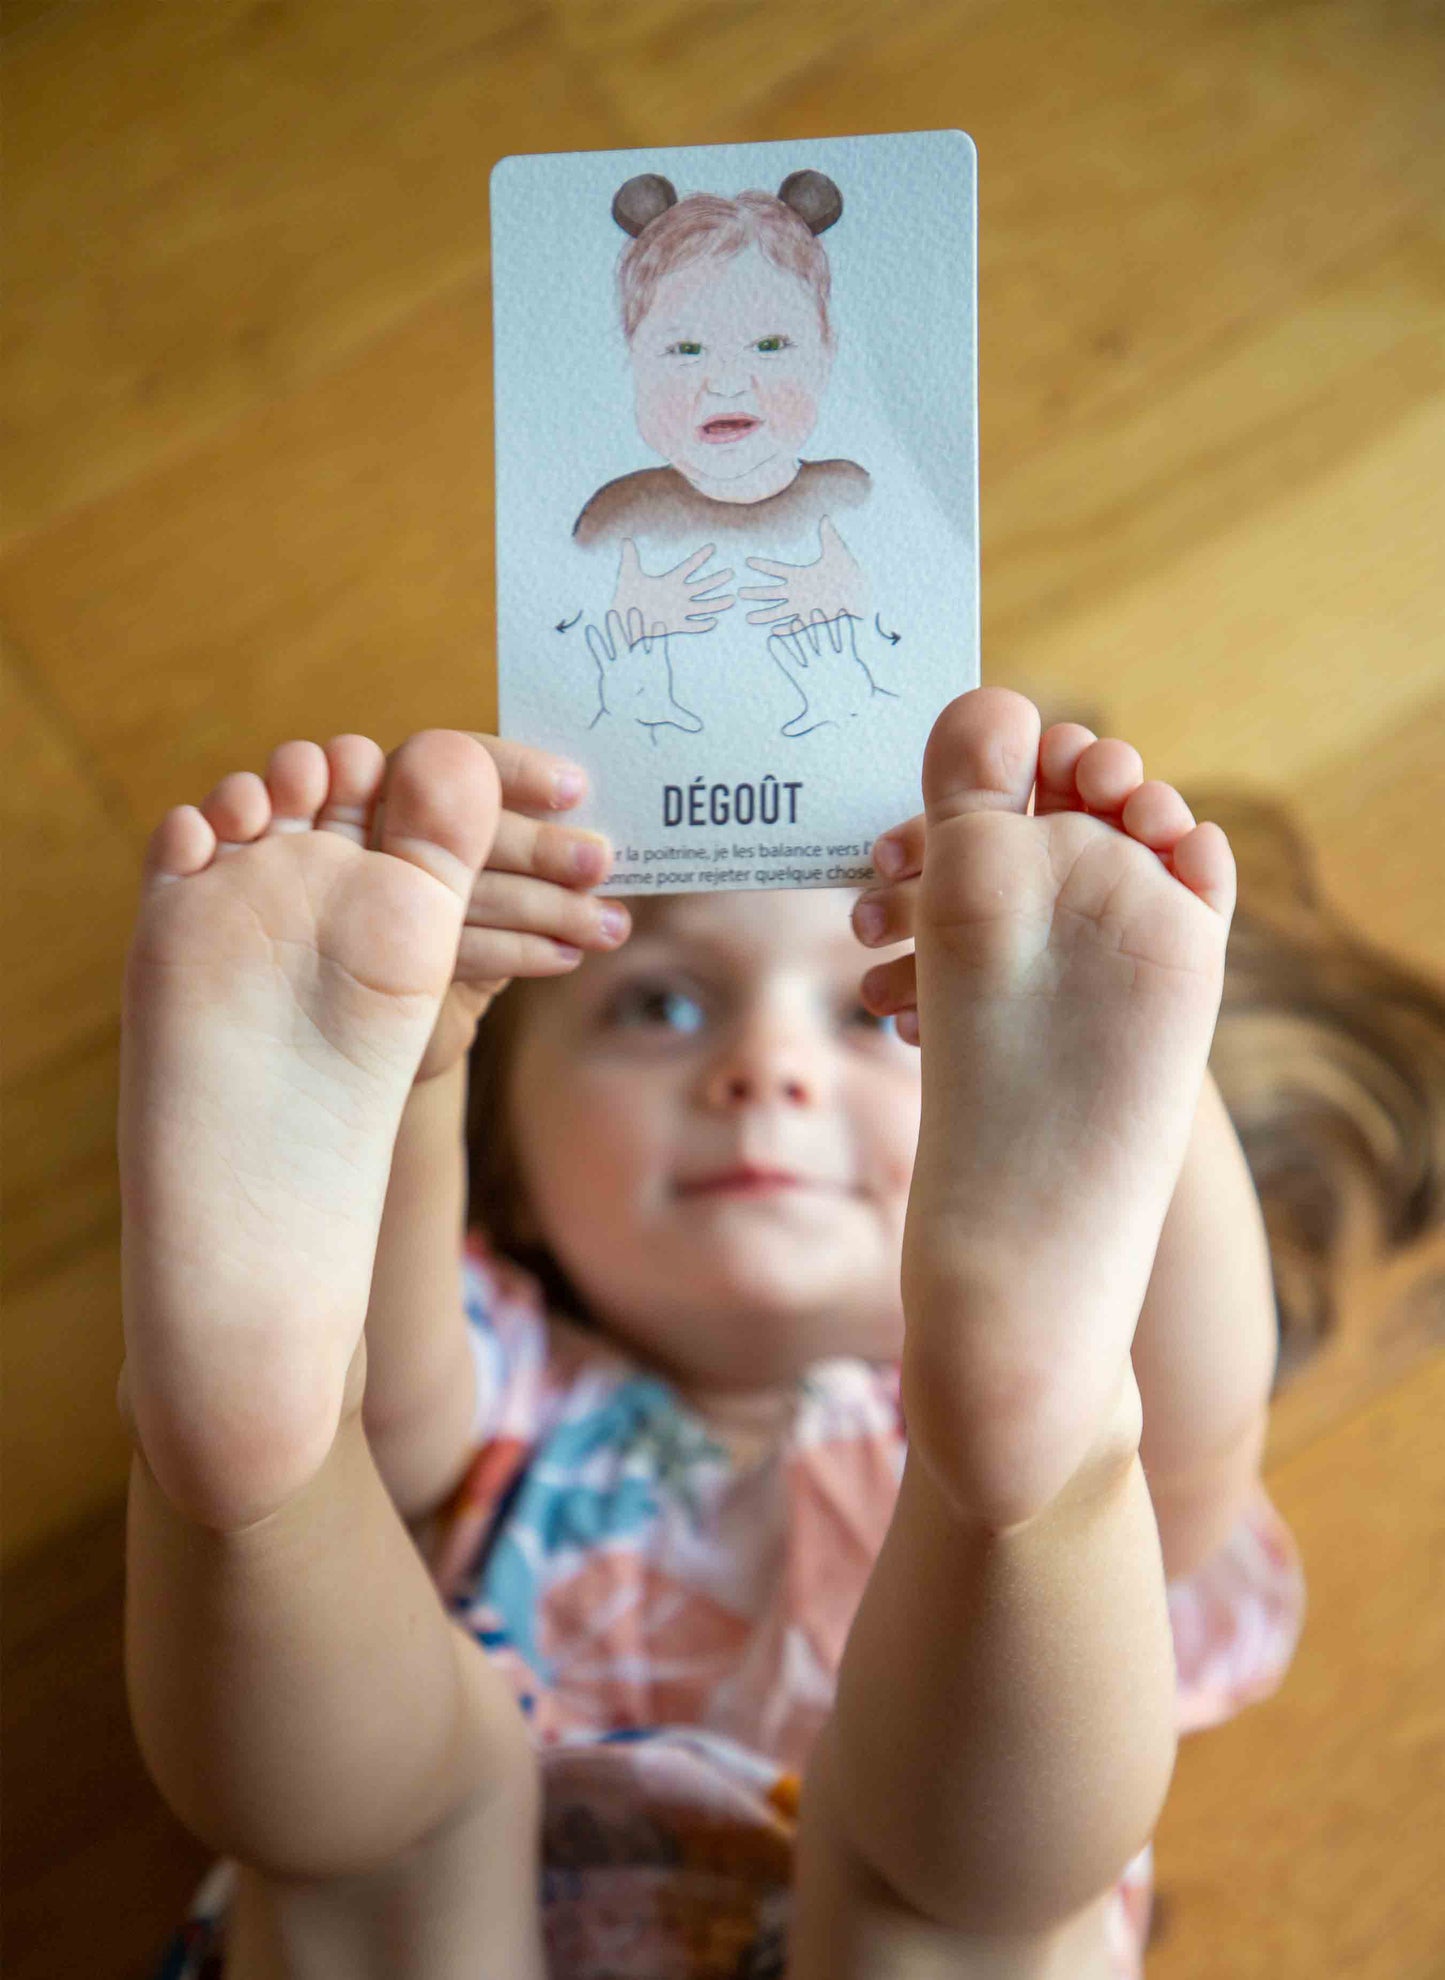 Enfant tenant la carte de signe bébé "dégoût", allongée sur le parquet, les pieds et les mains tendus vers le ciel.